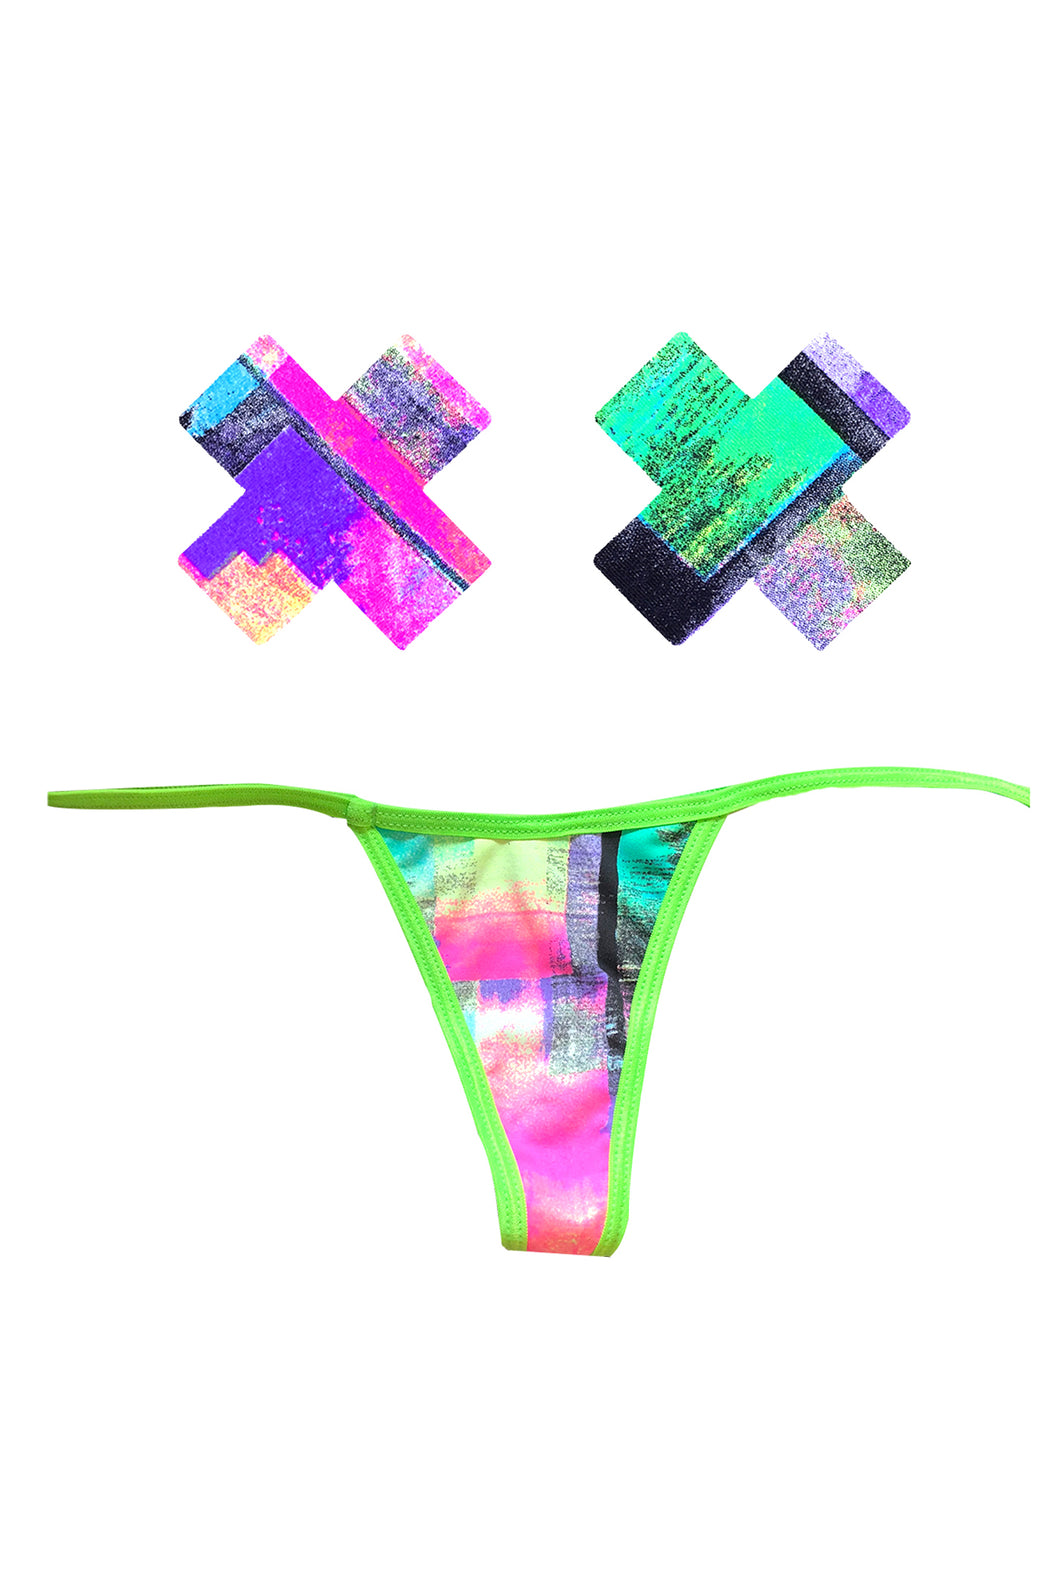 Neon Tetris Green UV G-String Naughty Knix Pasties & Panties Set